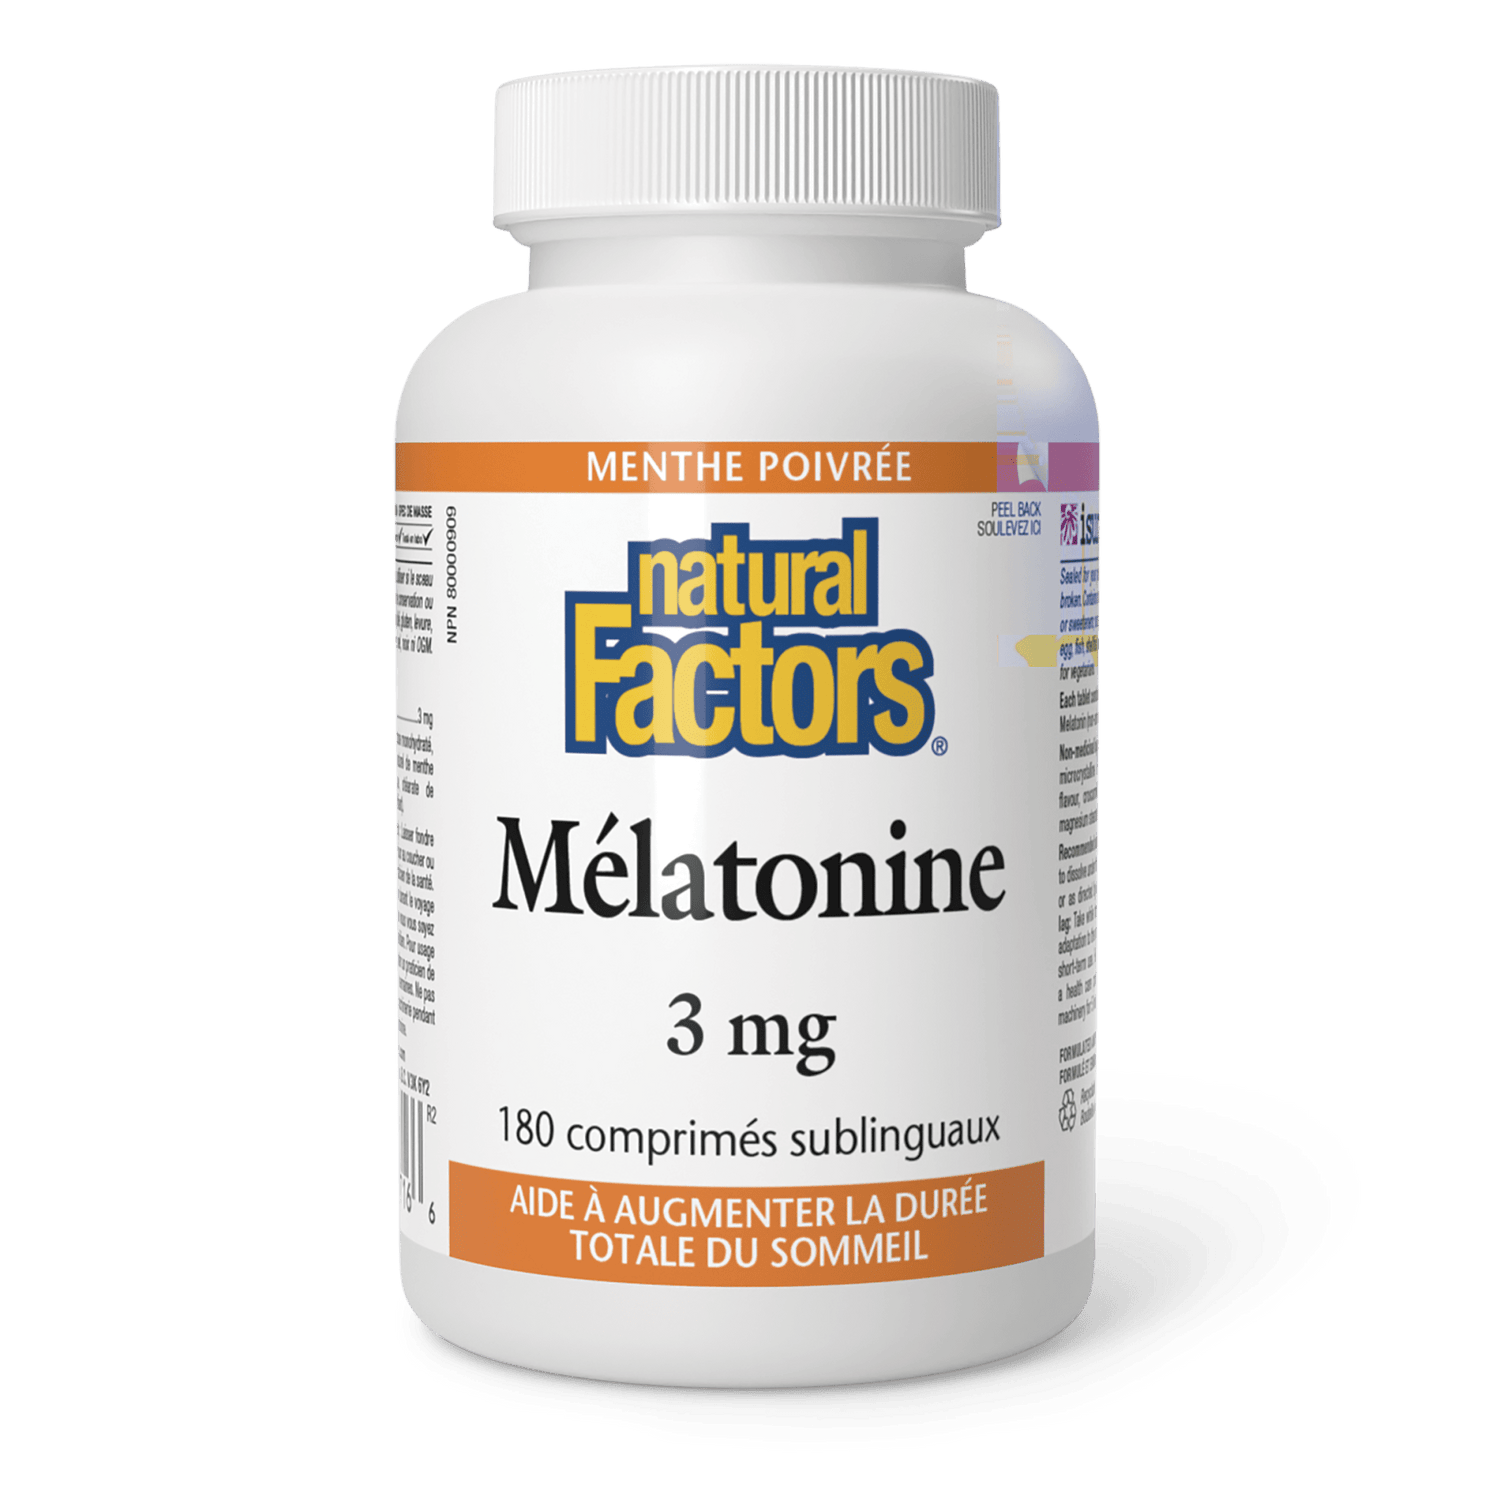 Mélatonine 3 mg, menthe poivrée, Natural Factors|v|image|2716